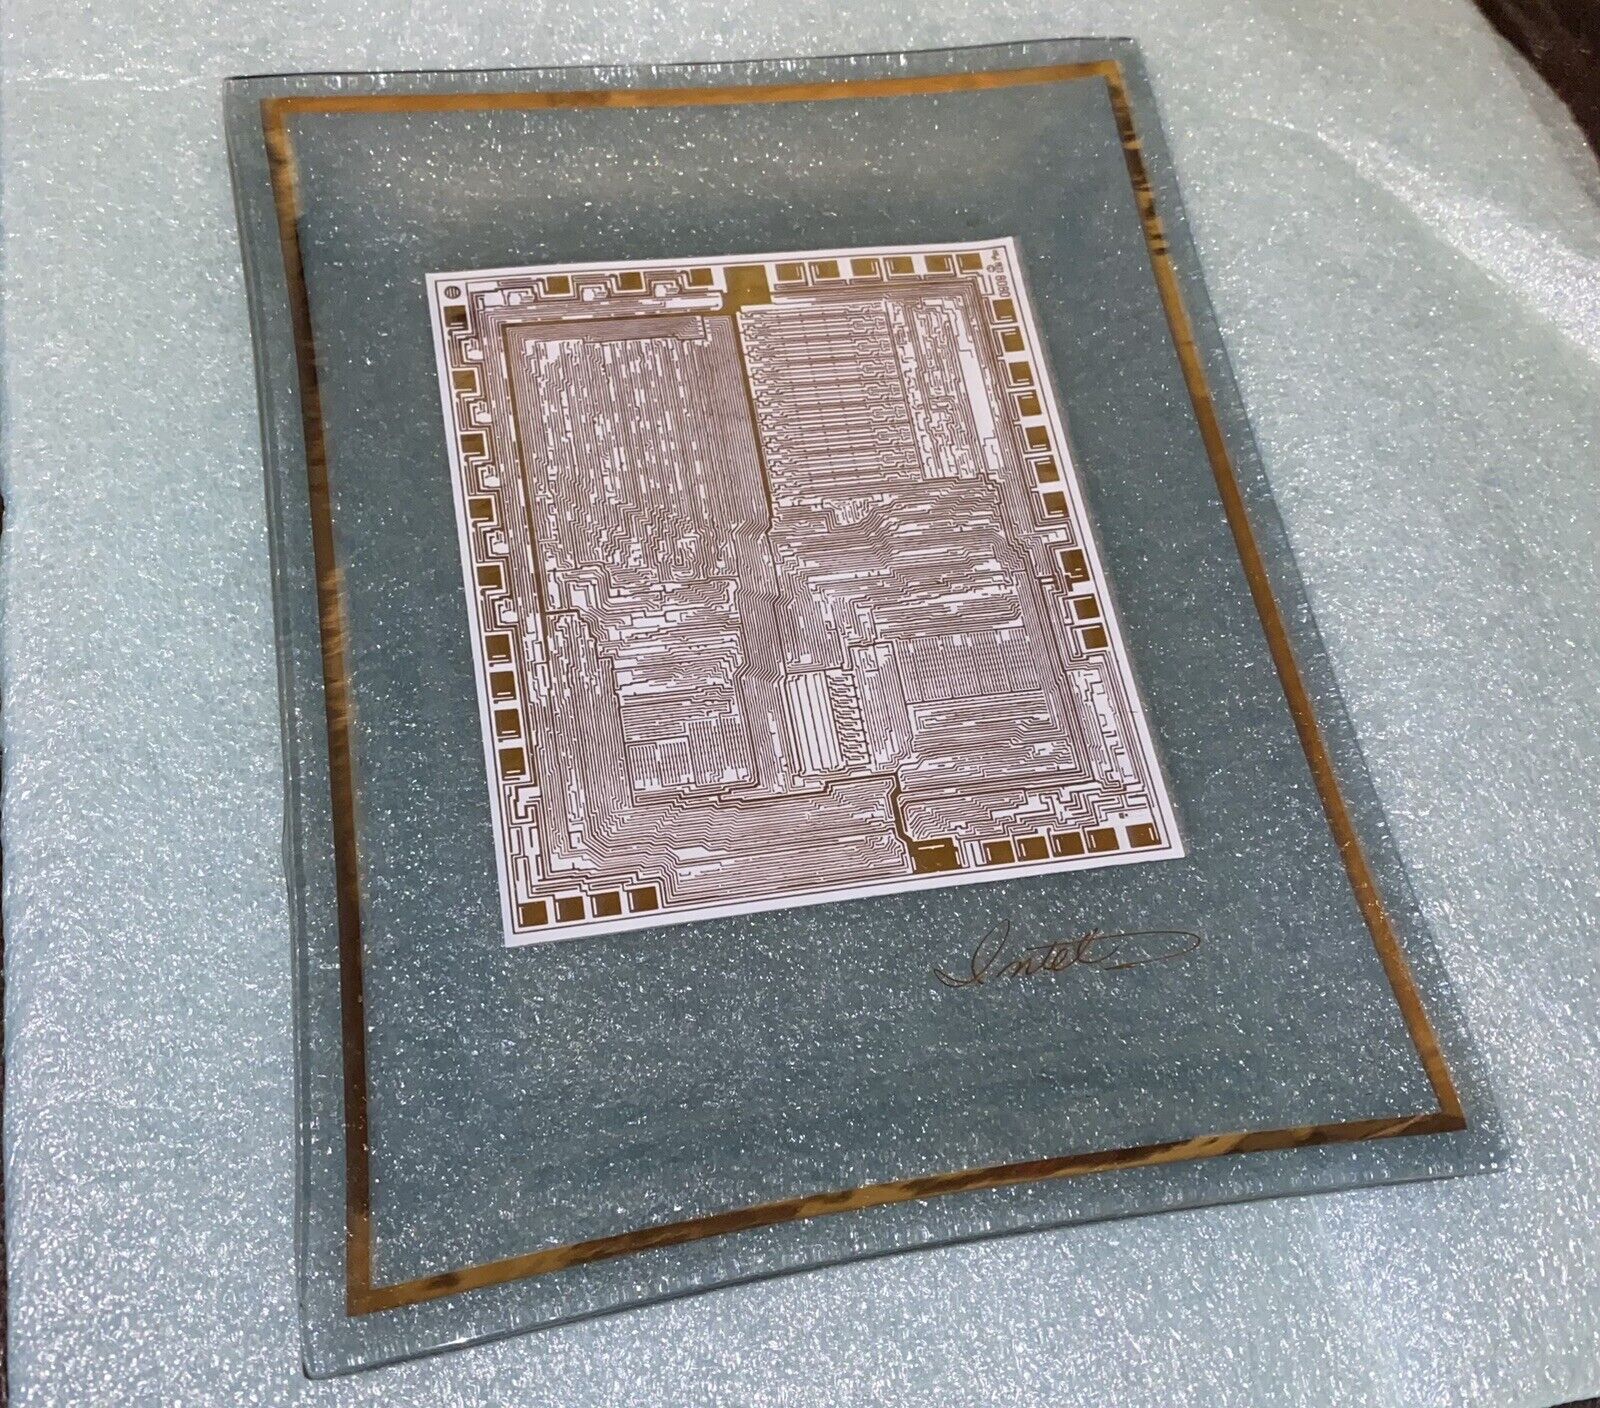 Intel 8080 Microprocessor Gold Glass Commemorative Dish 1974